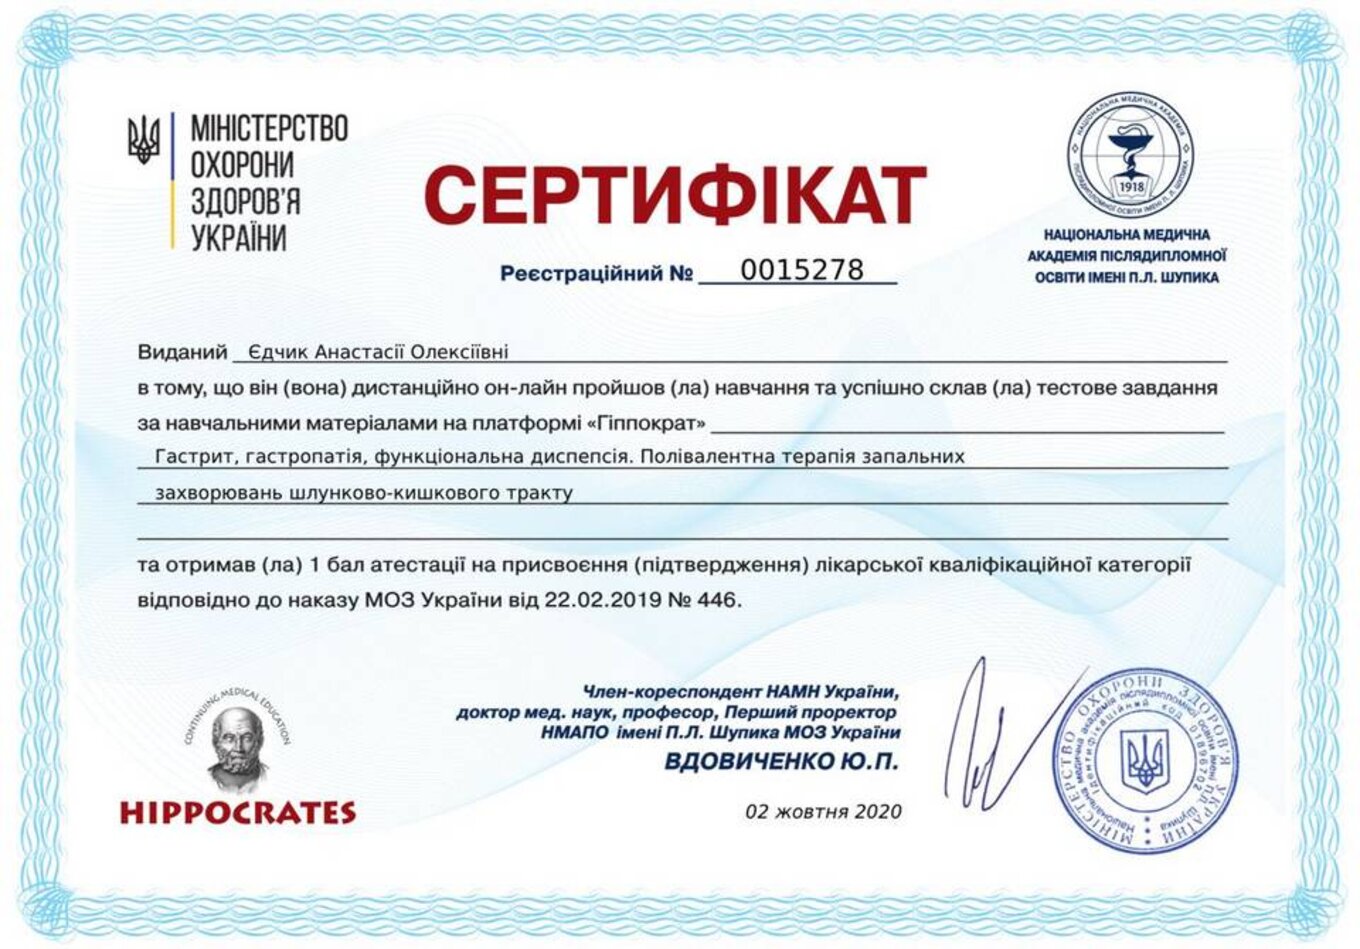 certificates/yedchik-anastasiya-oleksiyivna/erc-edchik-cert-45.jpg